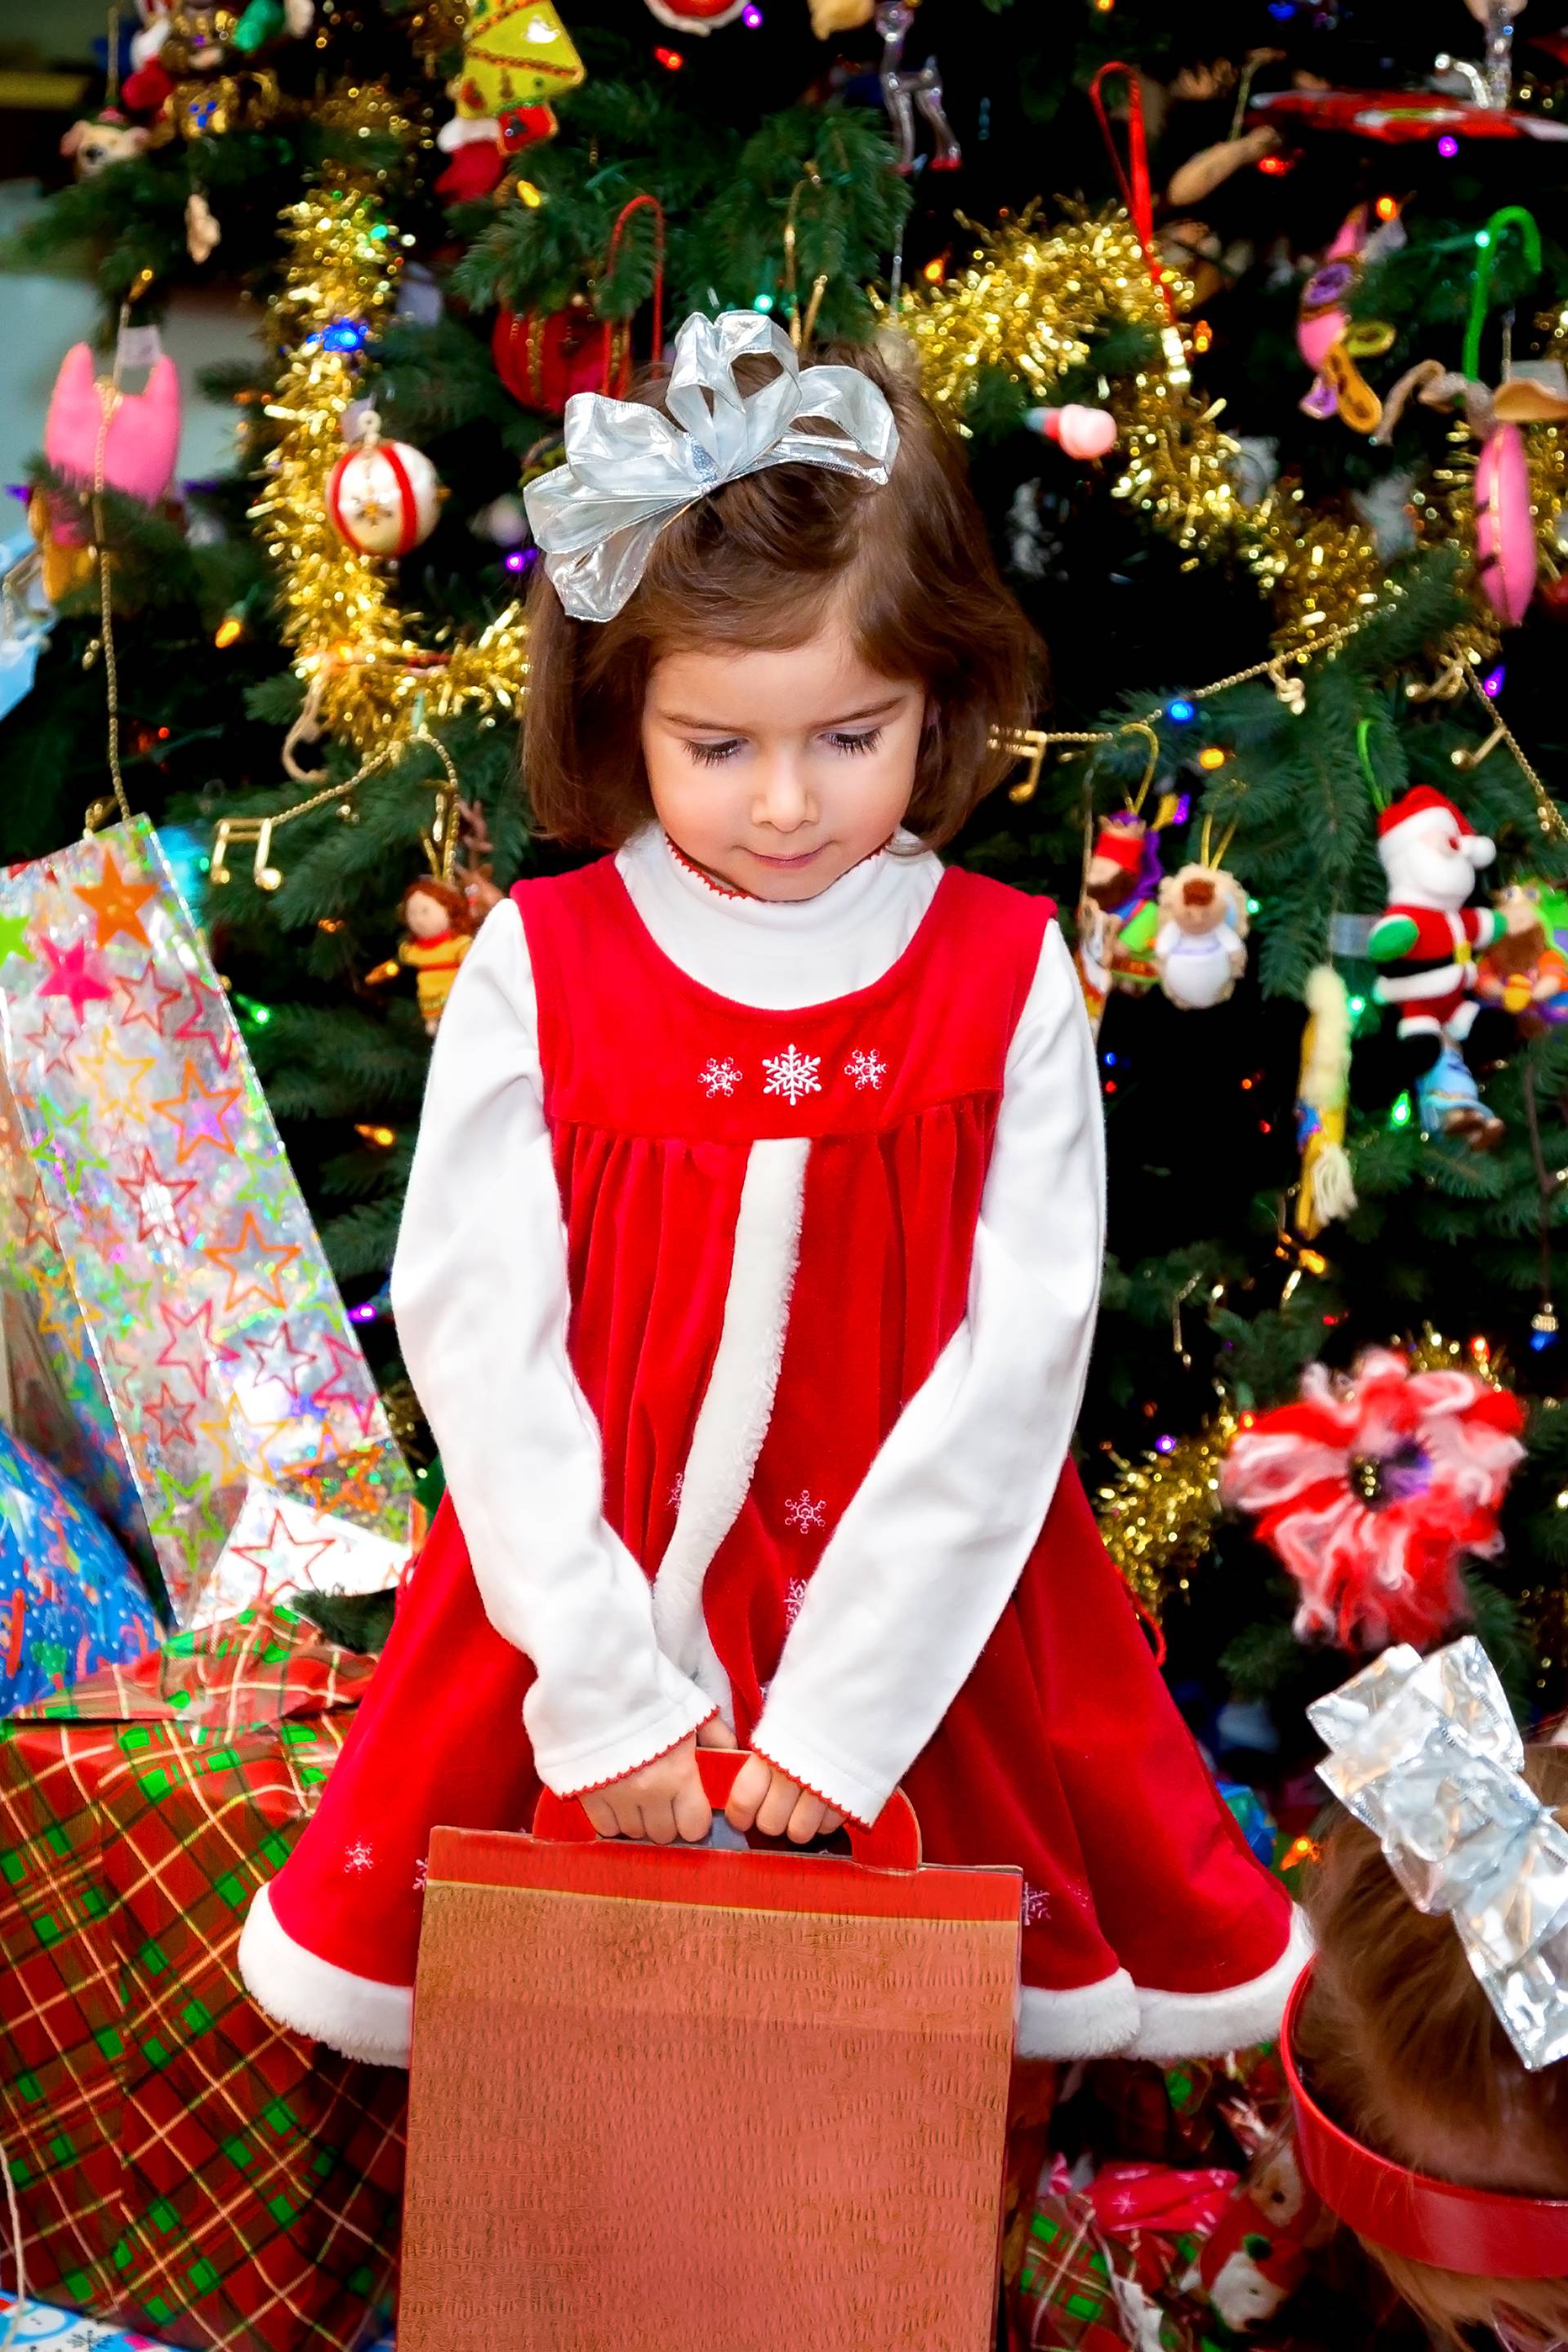 Previše darova učinit će djecu ravnodušnom - ne pretjerujte